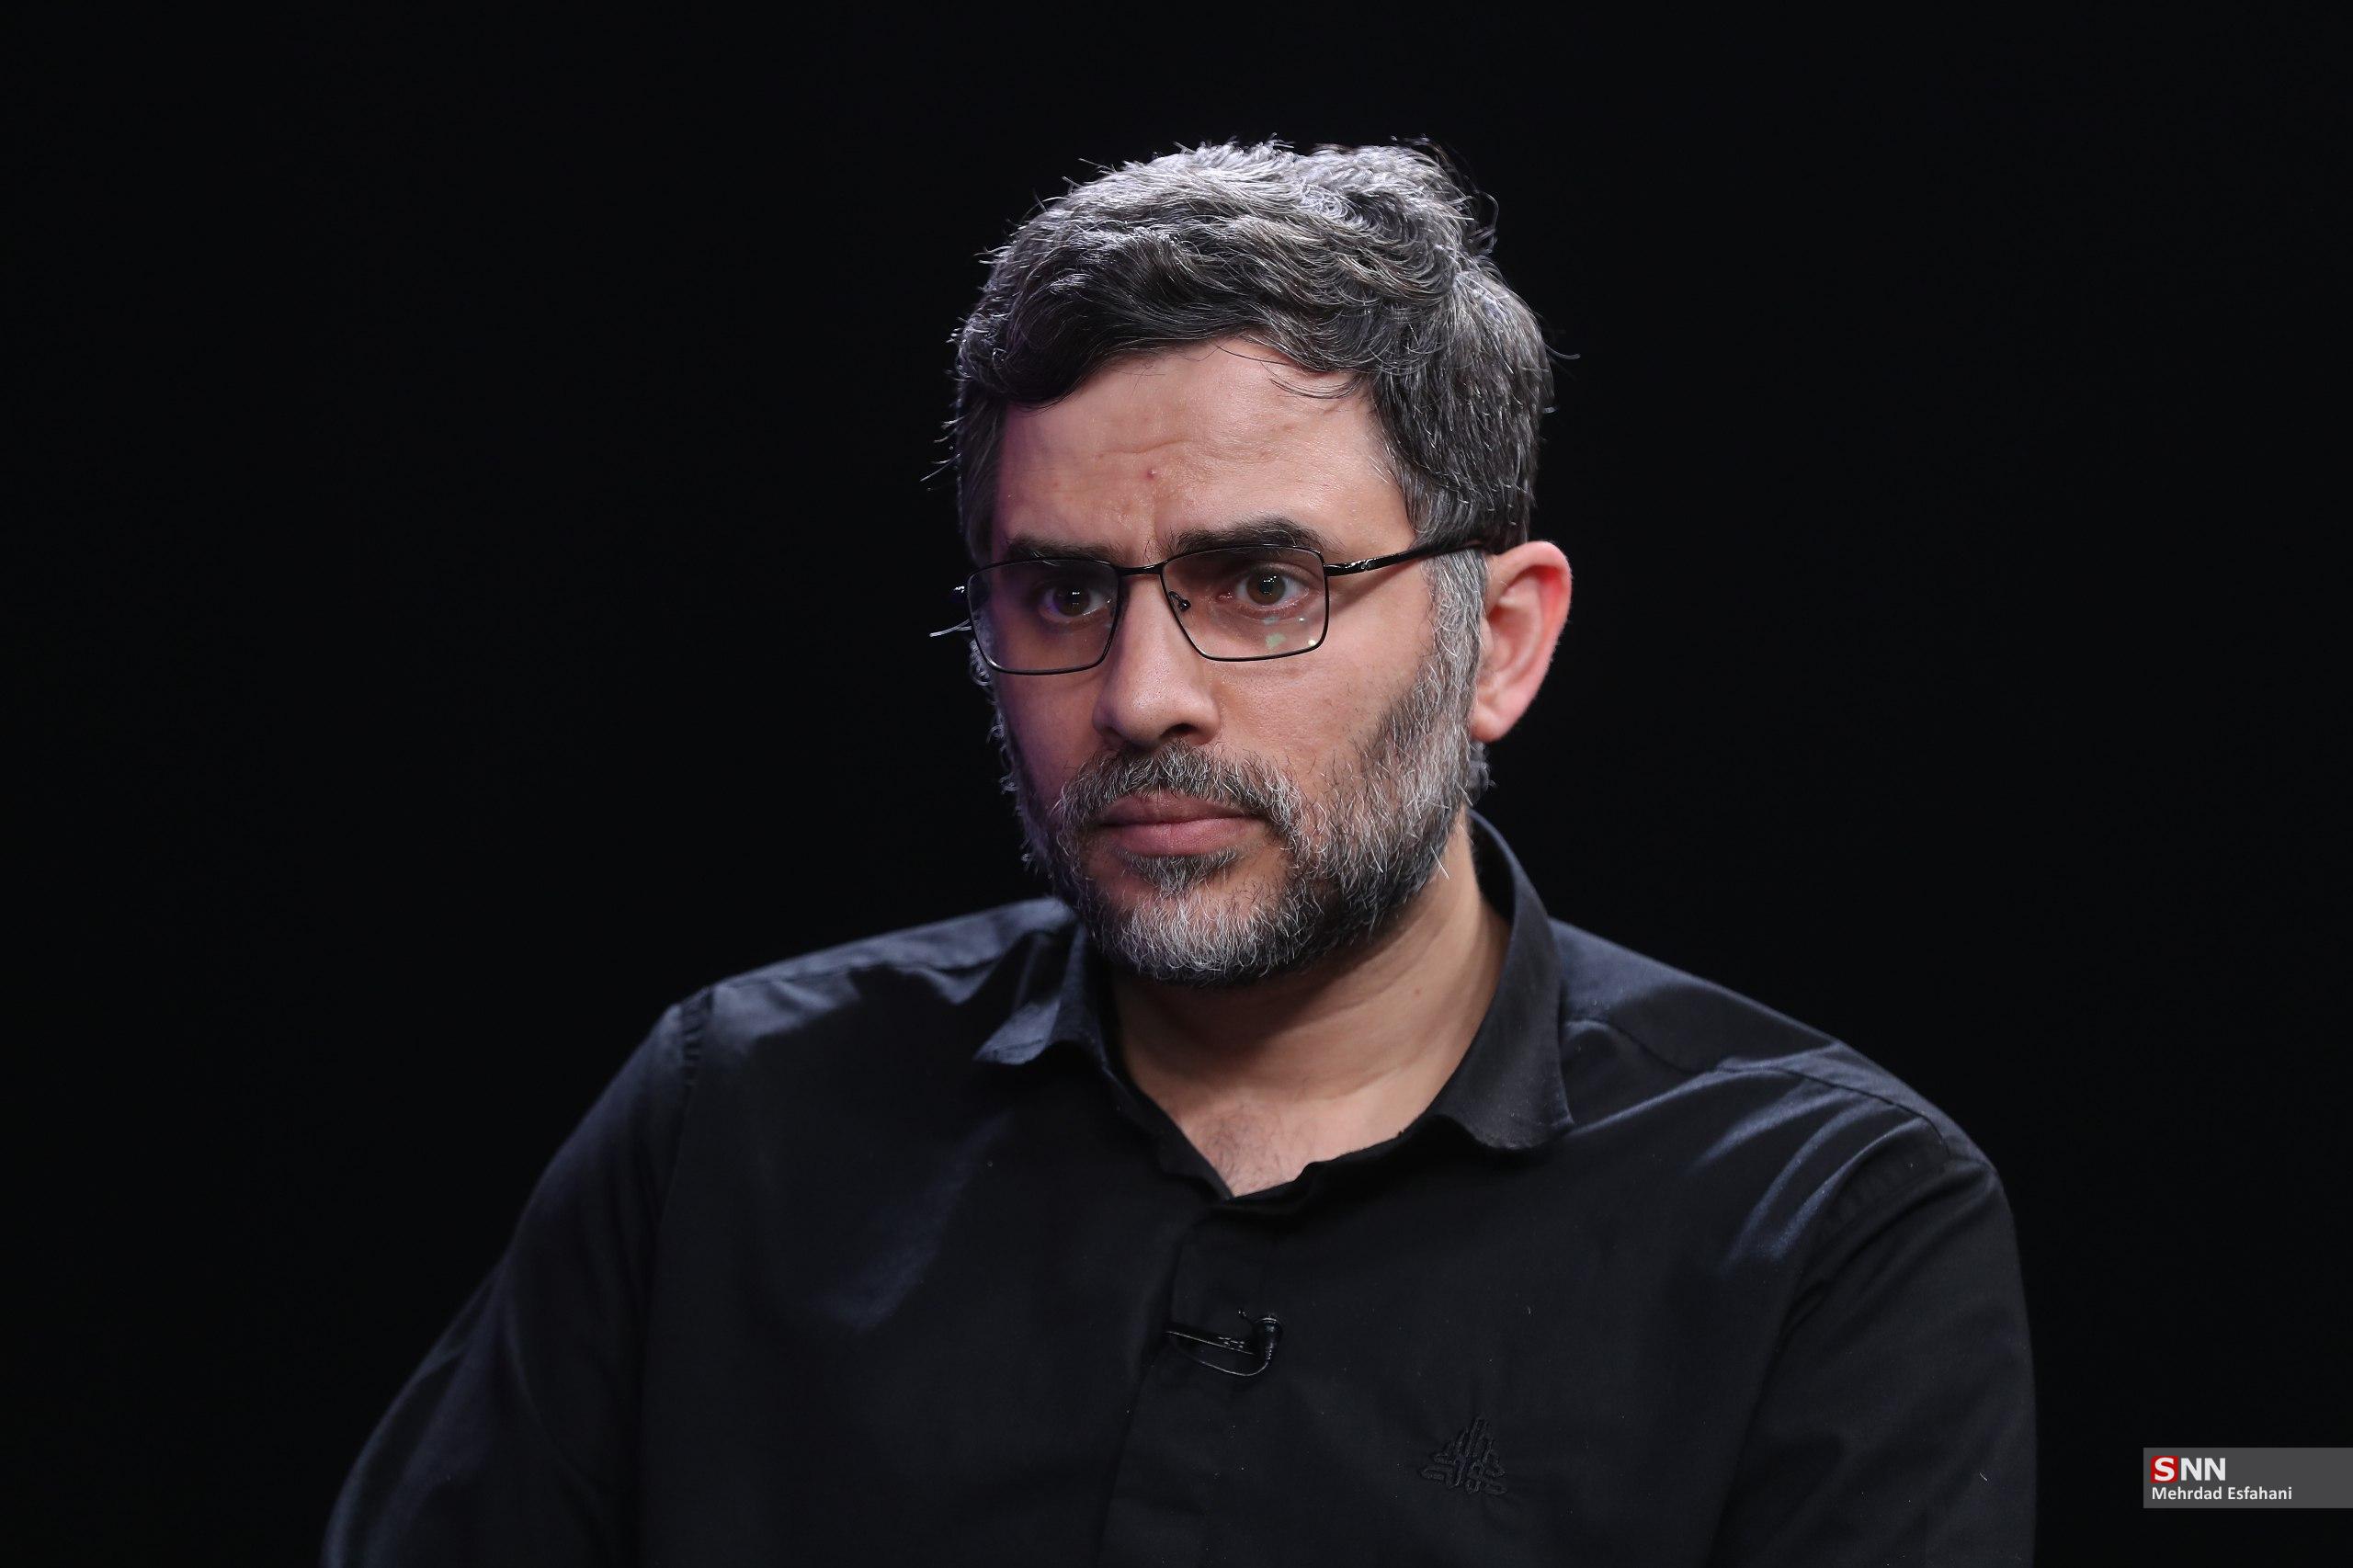 عباسی‌مهر: شهید رئیسی دانشگاه را فرصت می‌دانست نه تهدید/ شهید جمهور به دنبال حل مسائل کف جامعه بود +فیلم